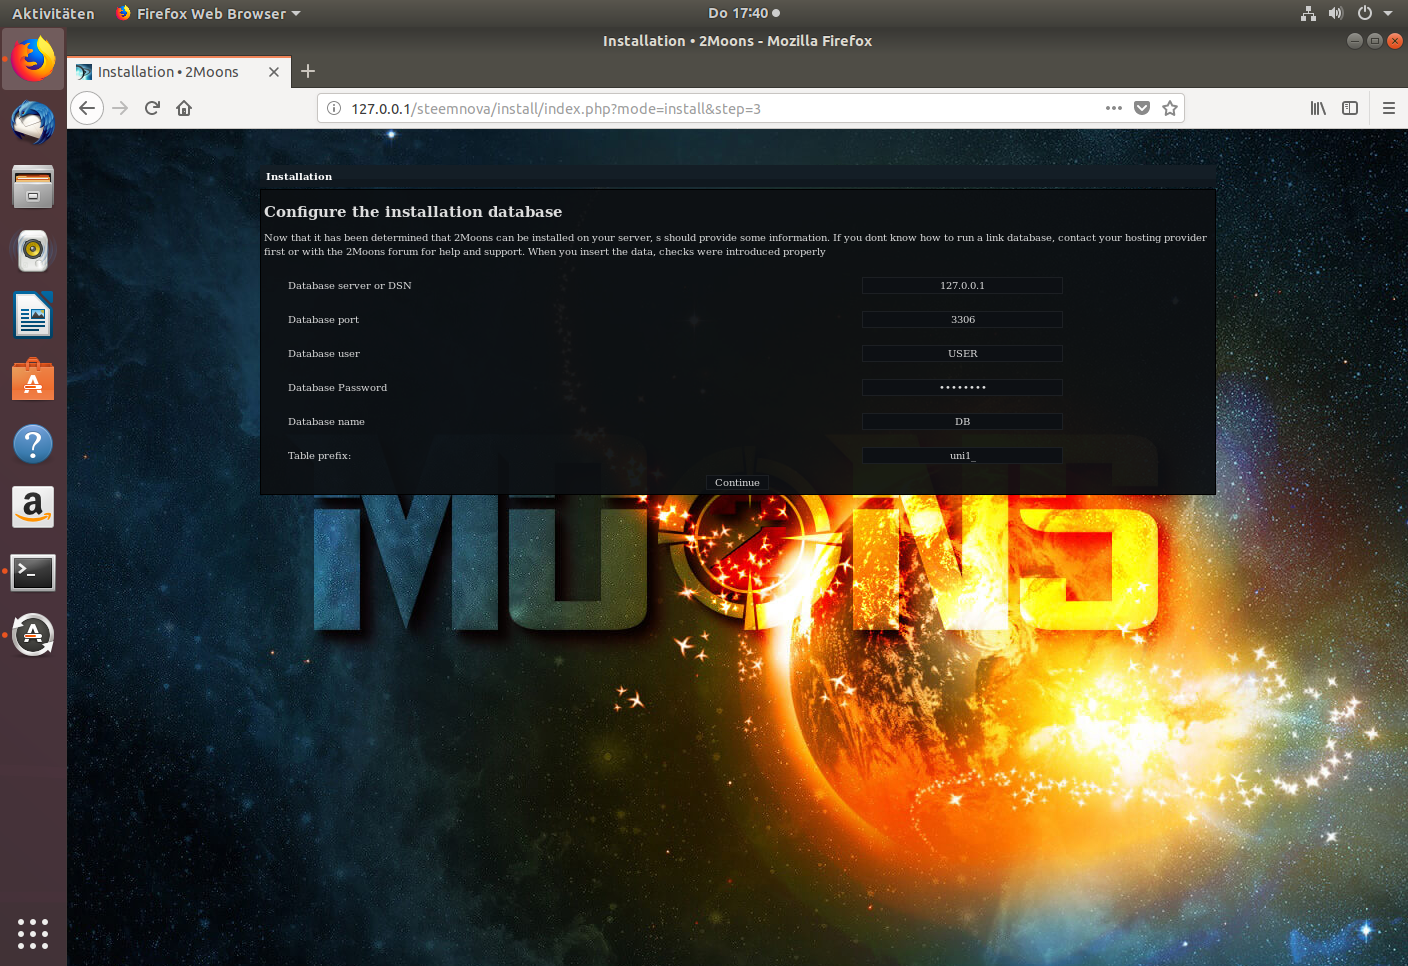 VirtualBox_ubuntu18.04-Klon-temp_03_05_2018_17_40_23.png